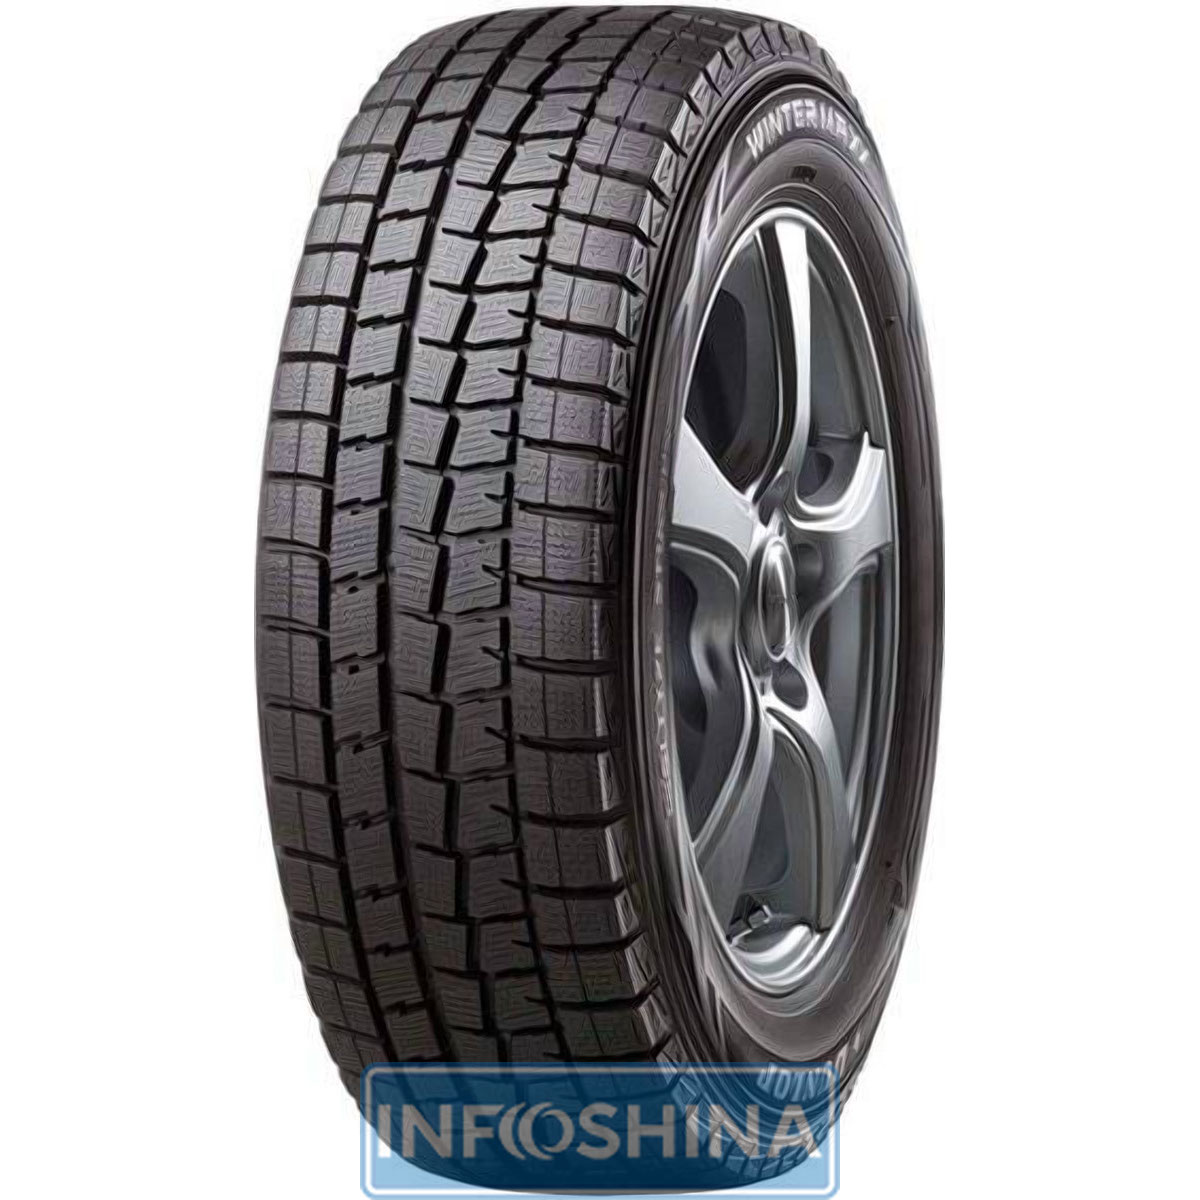 Купить шины Dunlop Winter Maxx WM01 215/65 R16 98T